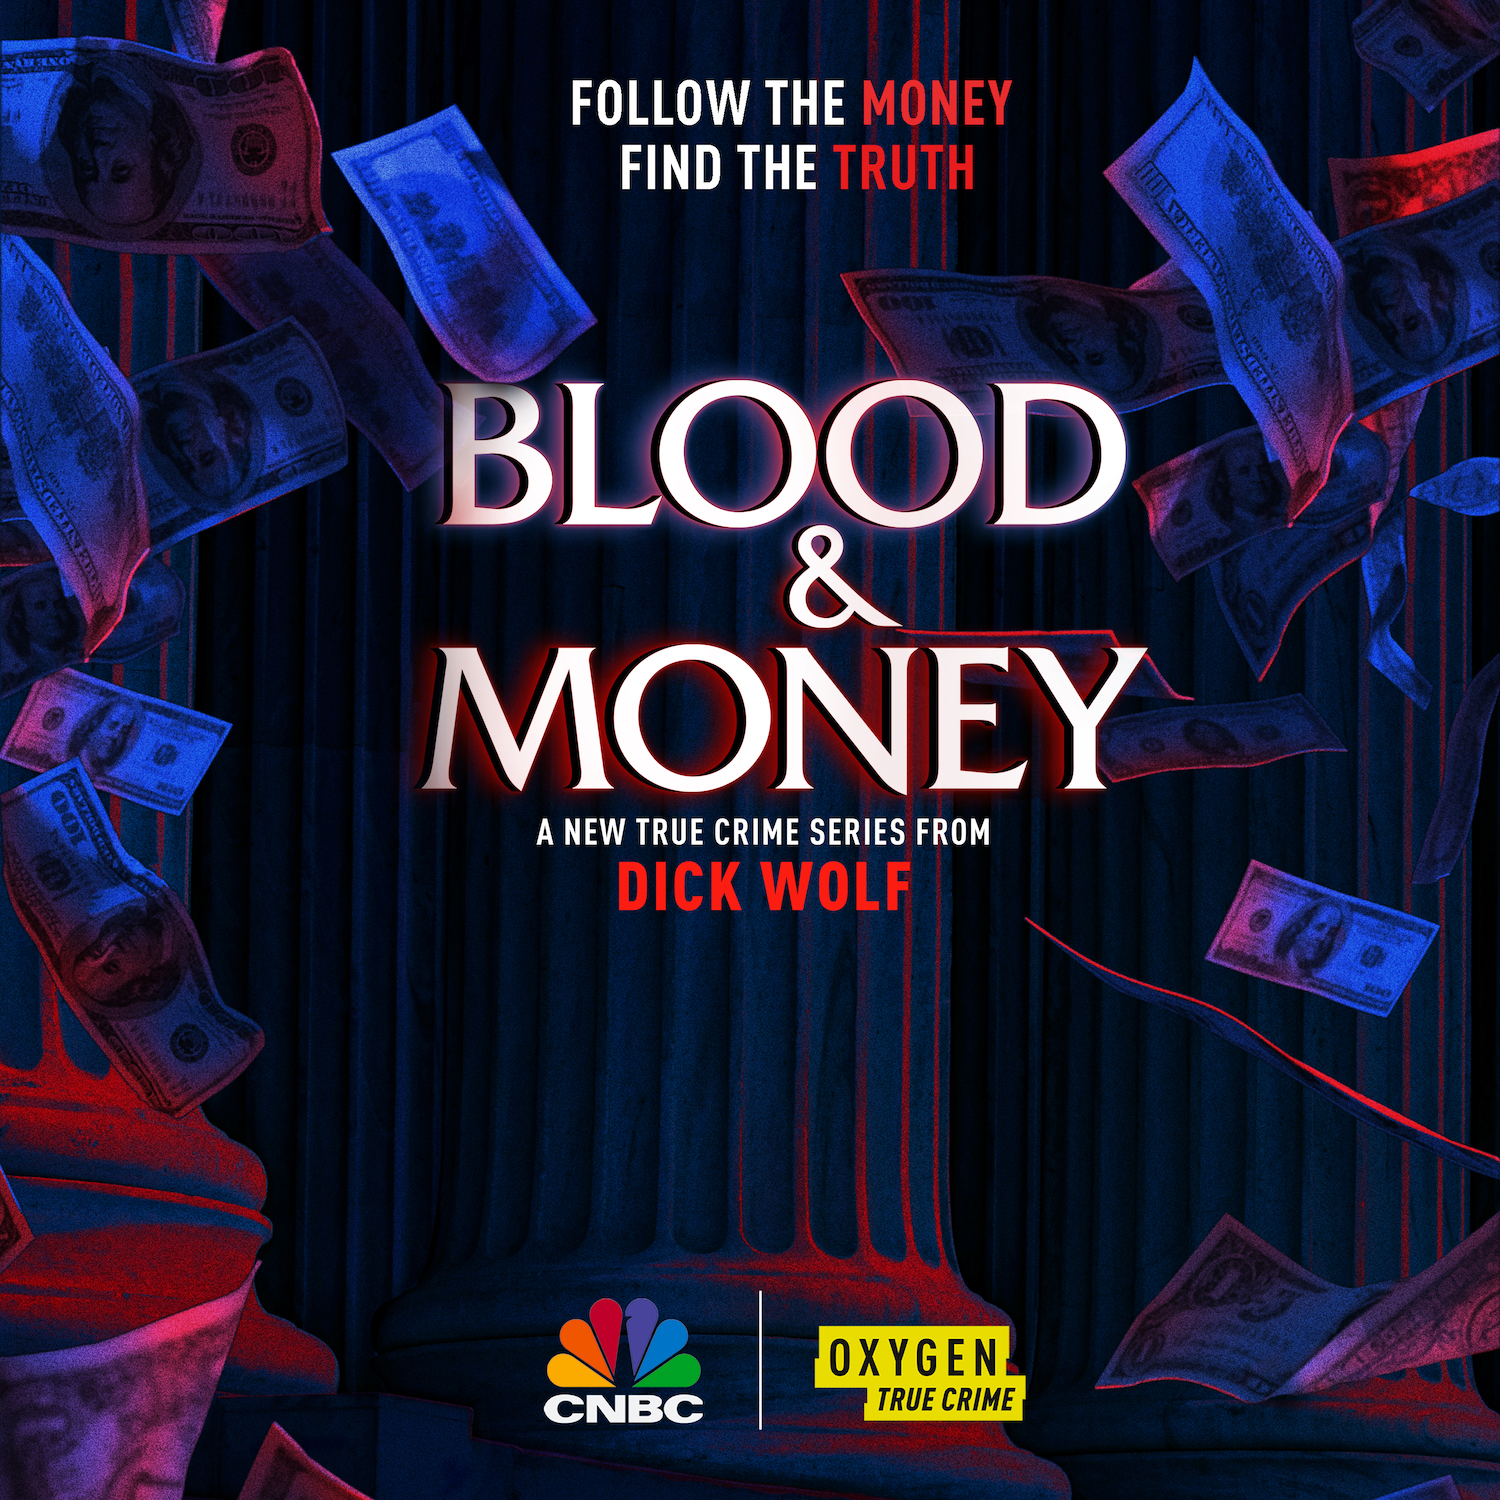 'Blood & Money' key art